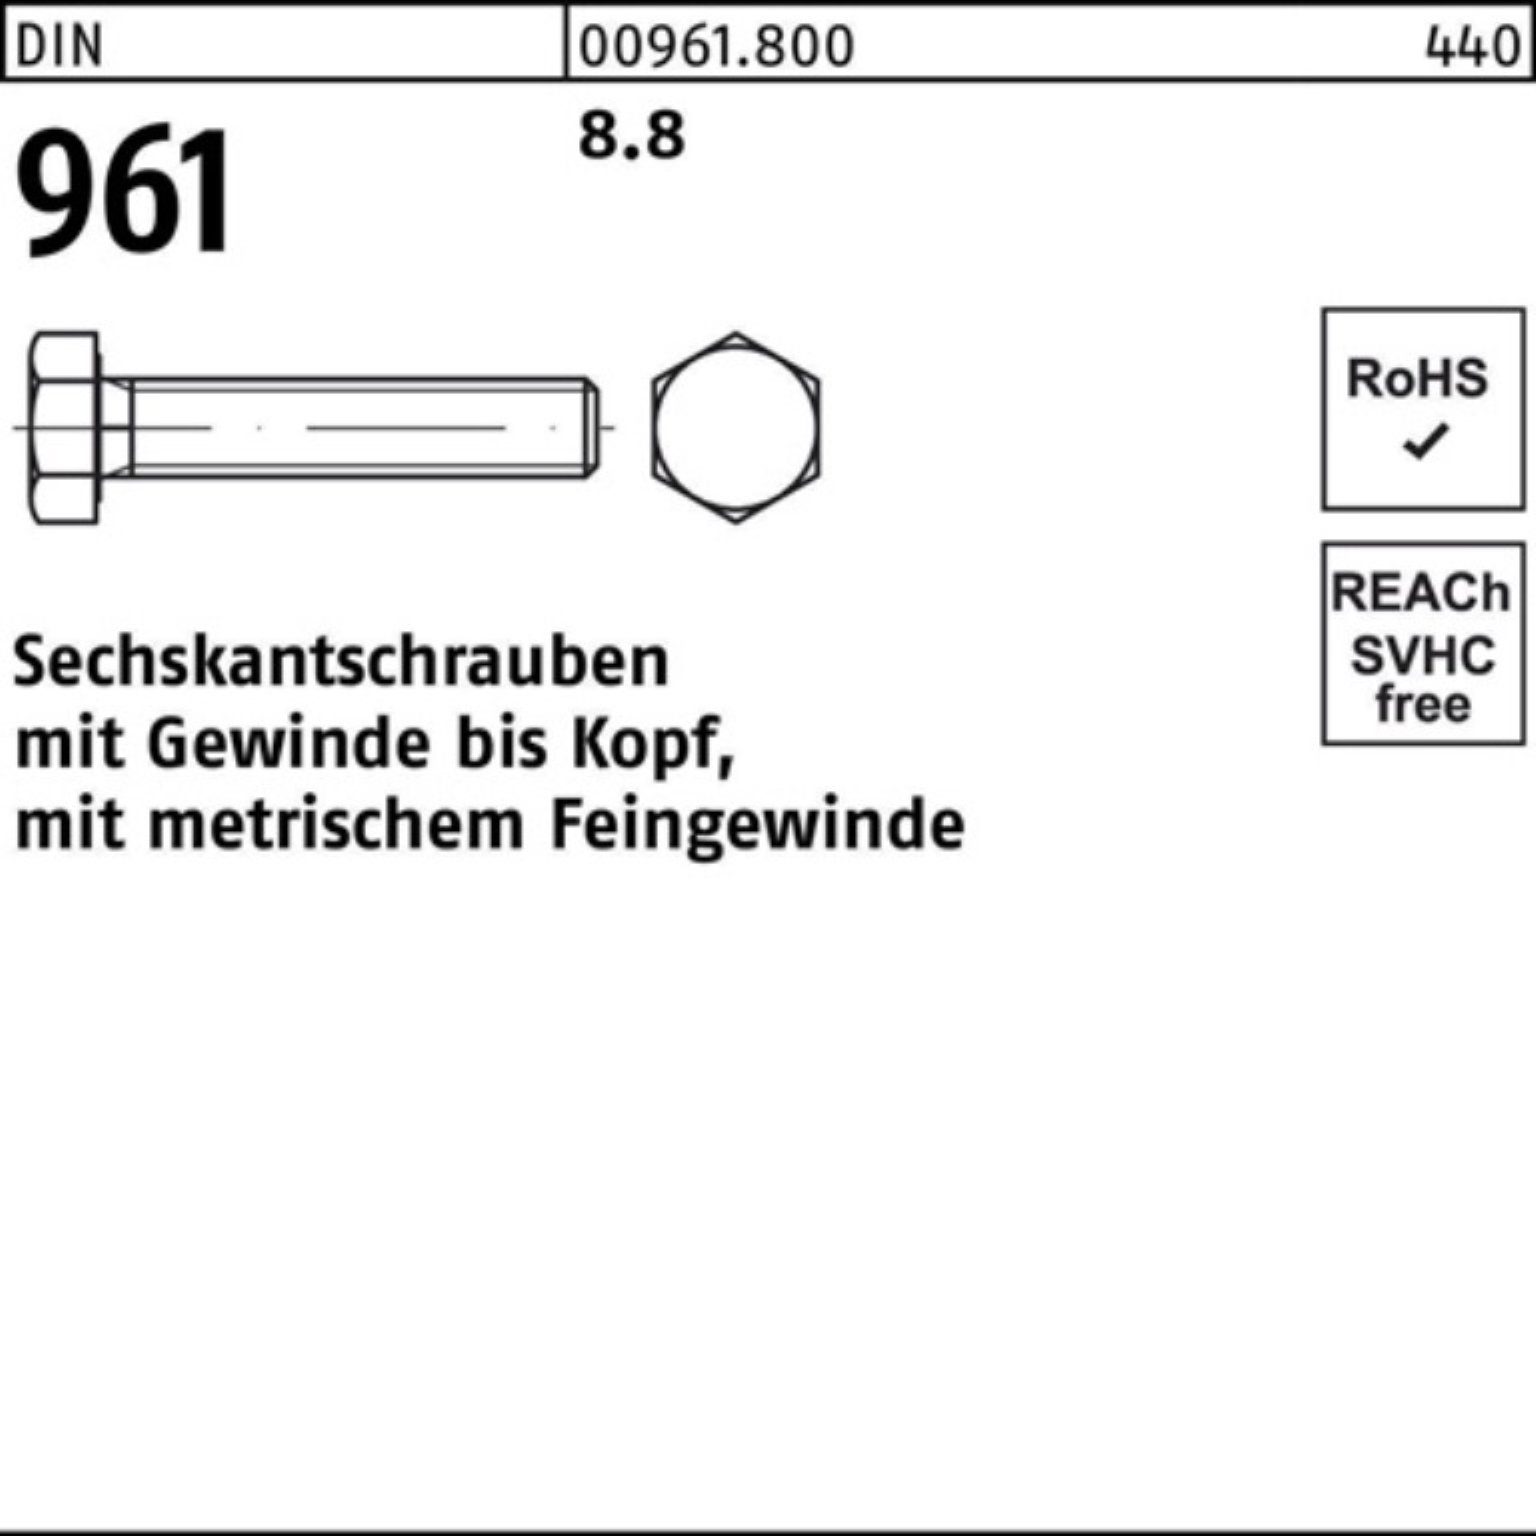 50 Sechskantschraube Sechskantschraube 961 Pack Reyher DIN Stück VG 100er M14x1,5x110 8.8 DIN